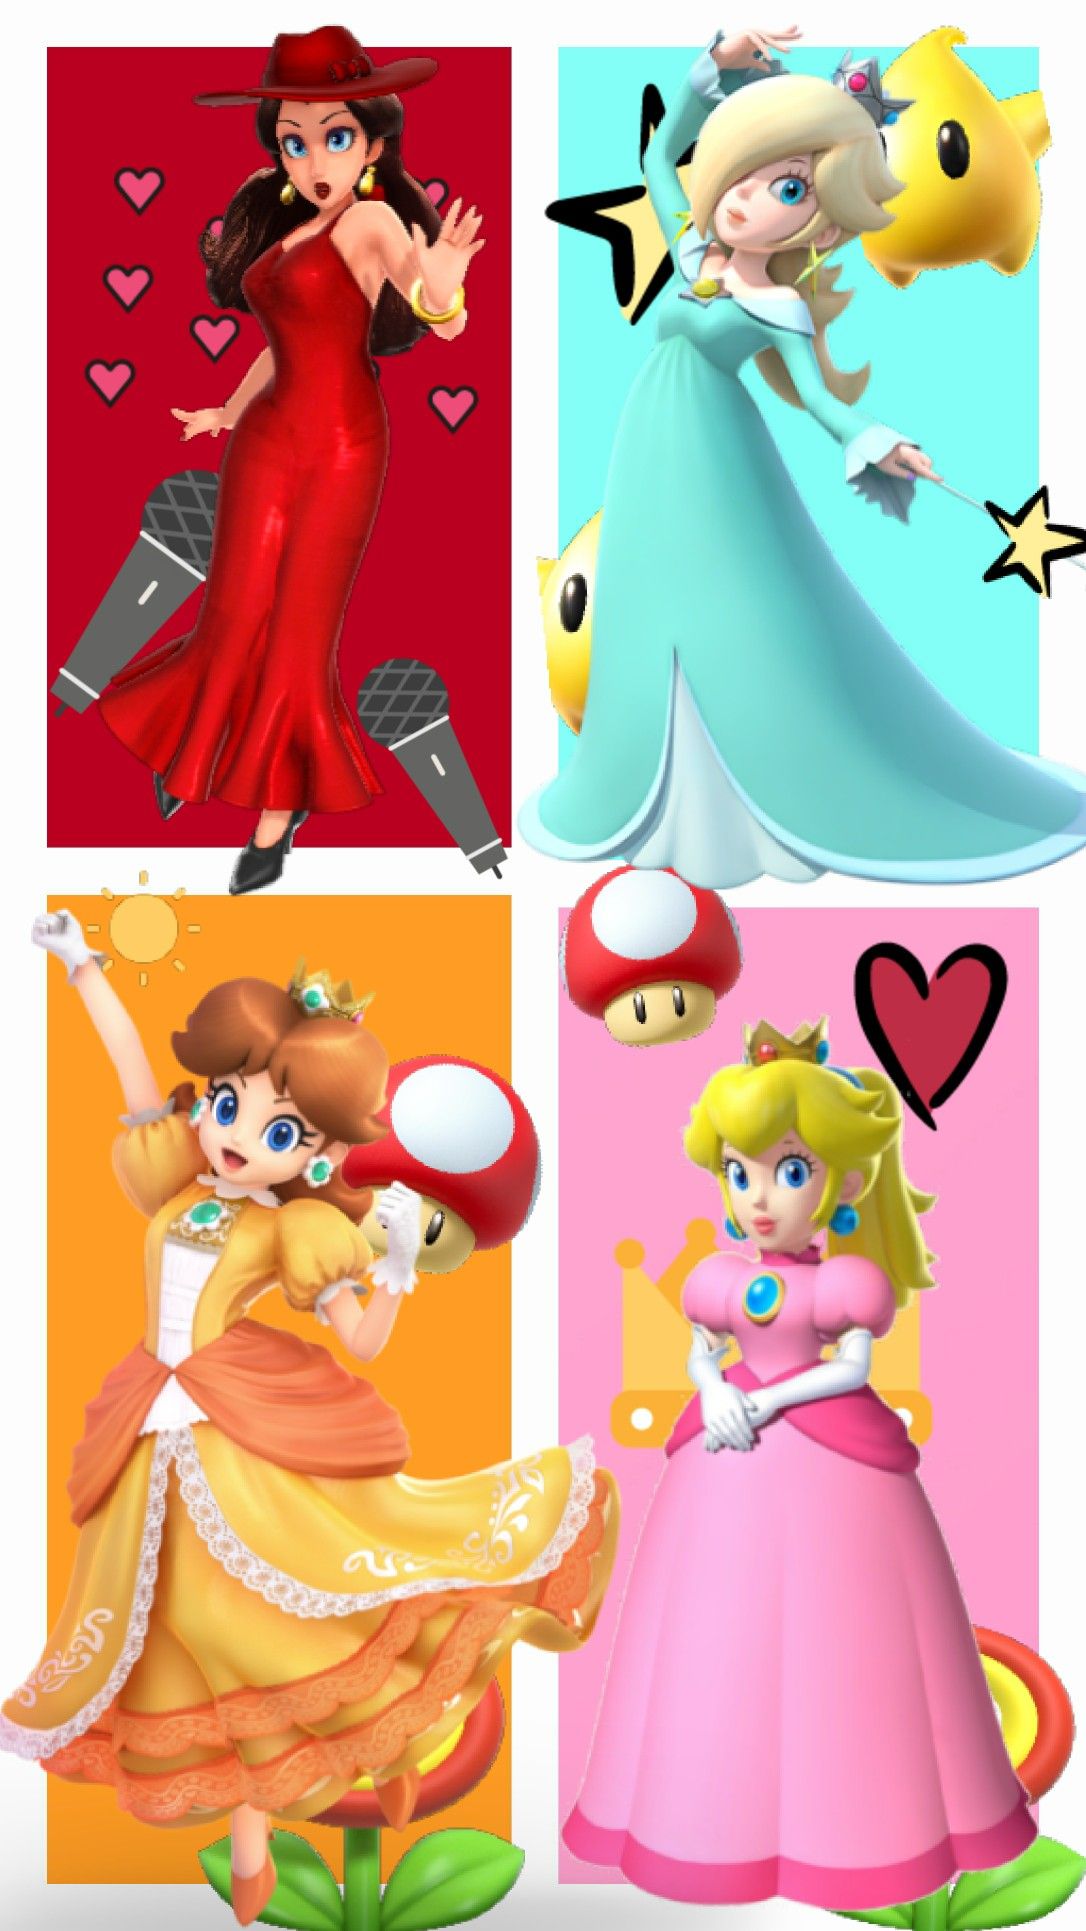 Mario, Luigi etc